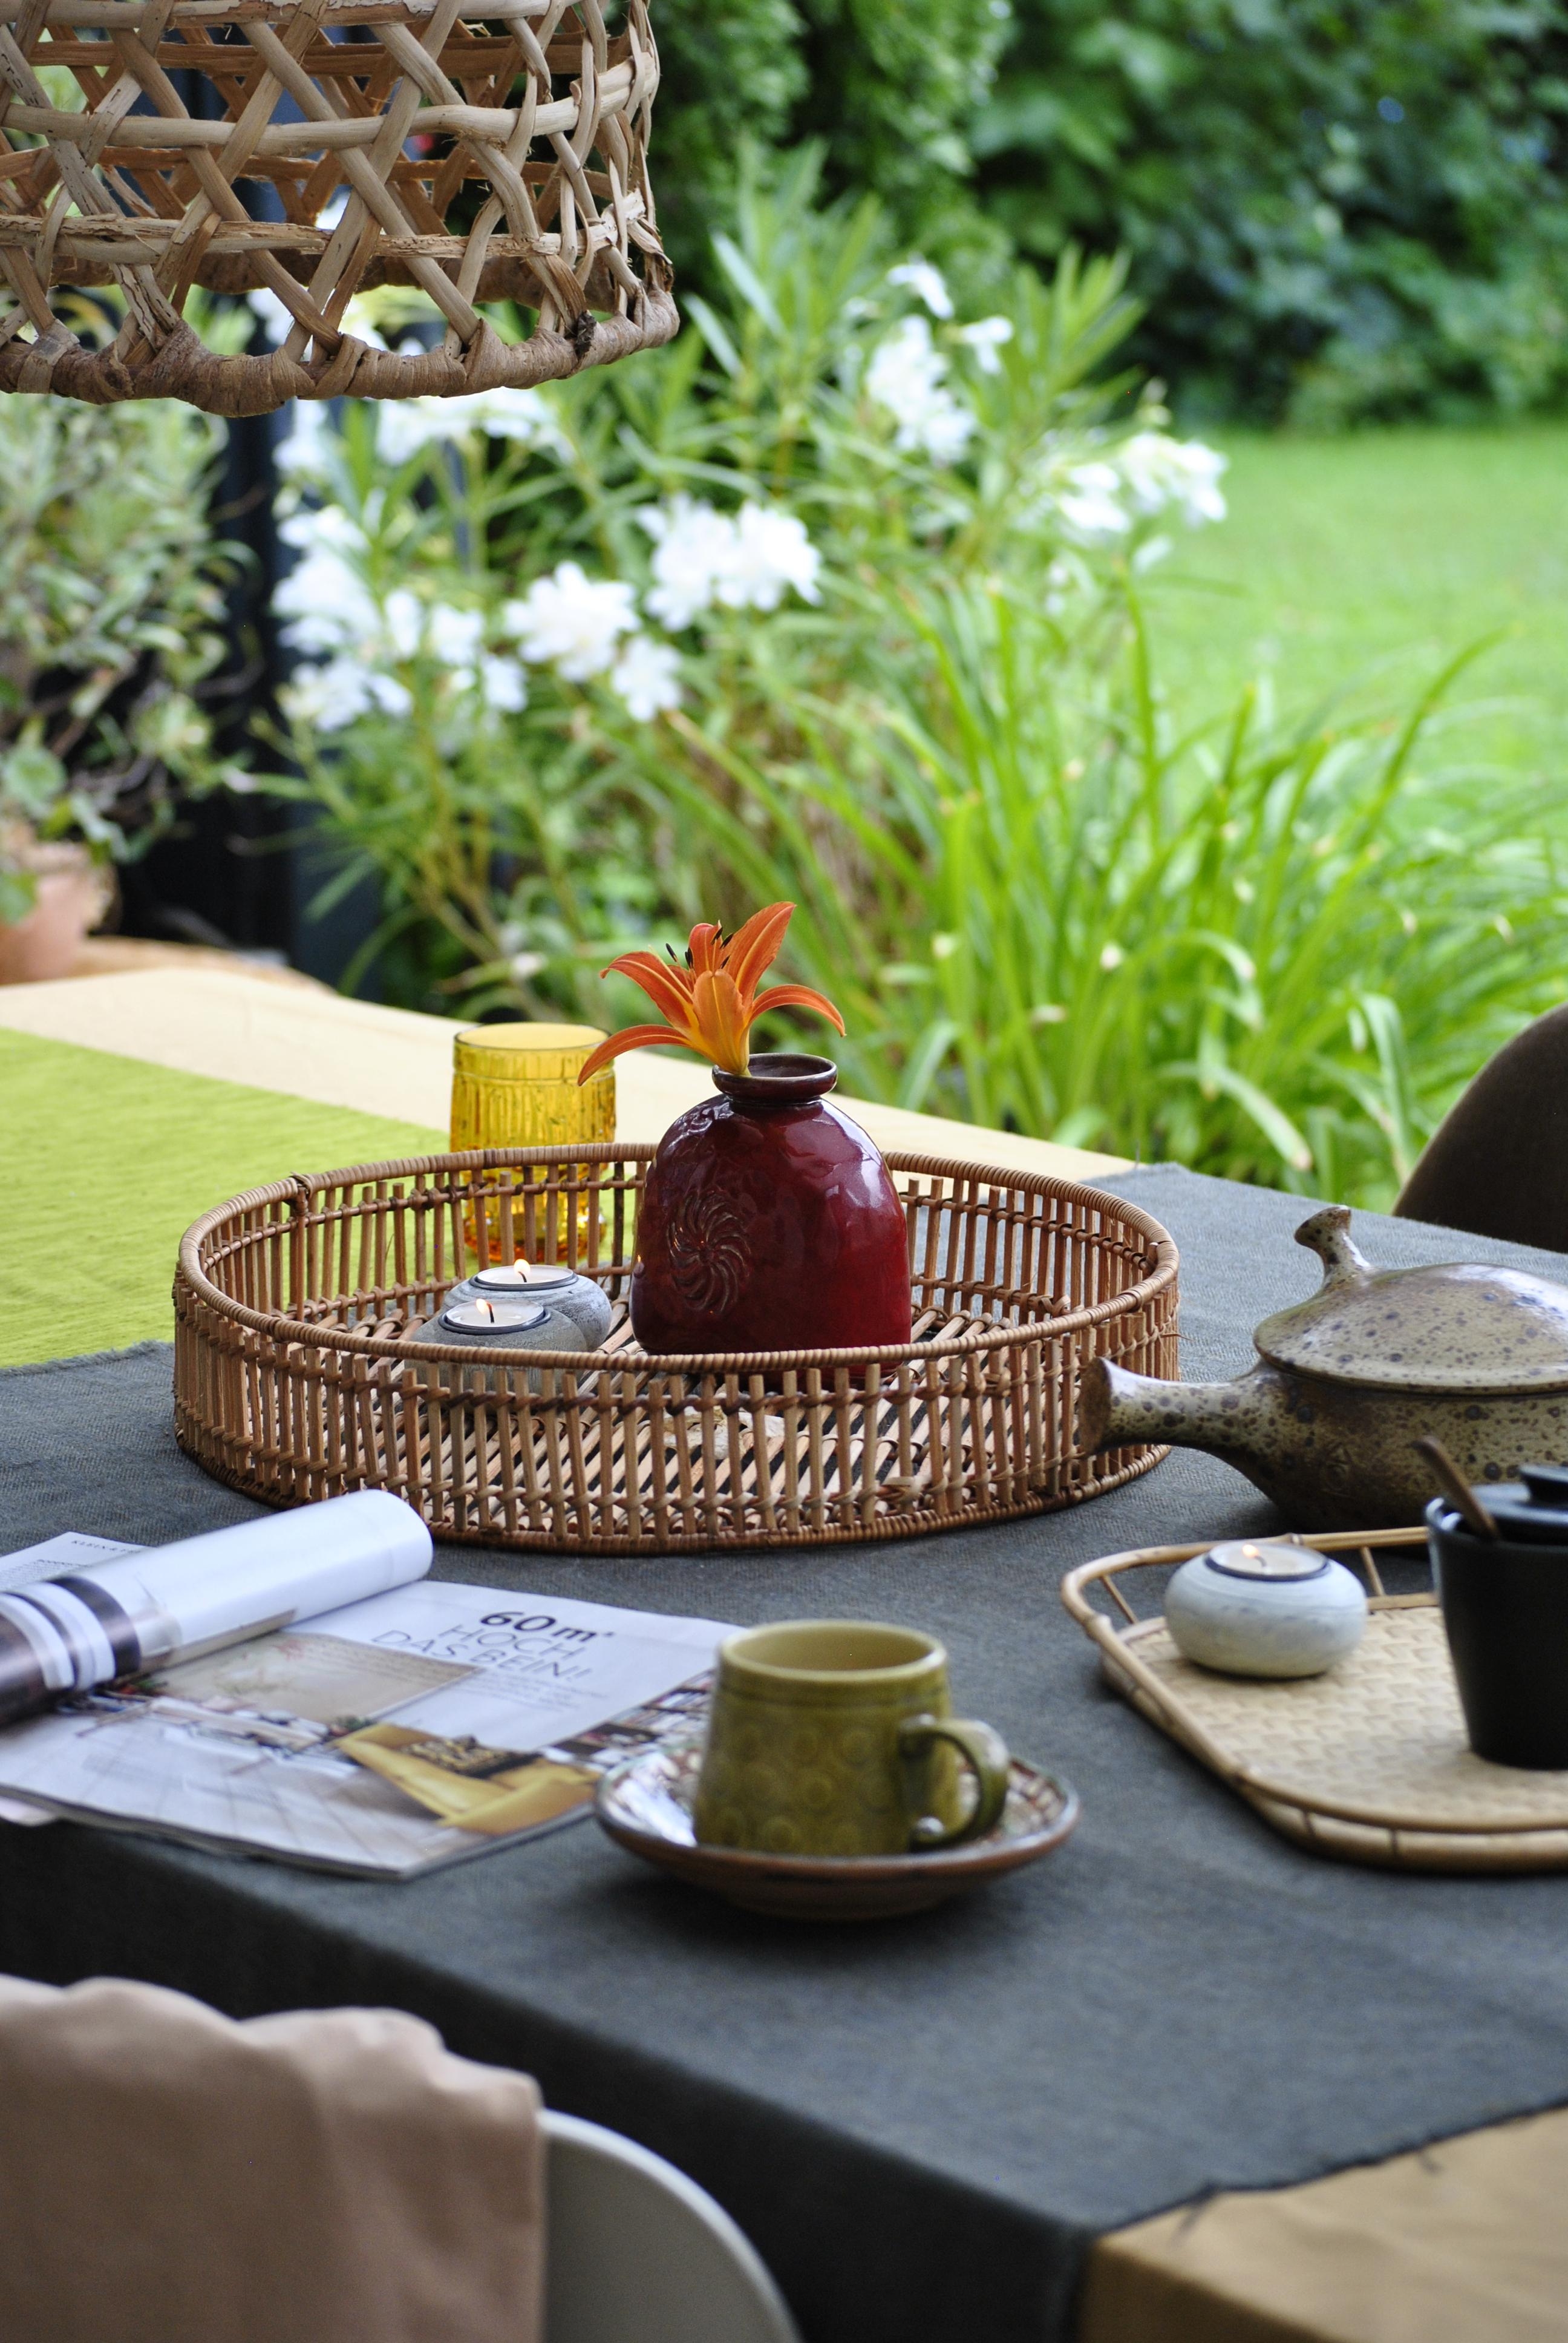 Bei #kerzenschein und Regen mit #kaffee und #schönerwohnen auf der #terrasse - hat auch was. #zuhausesein